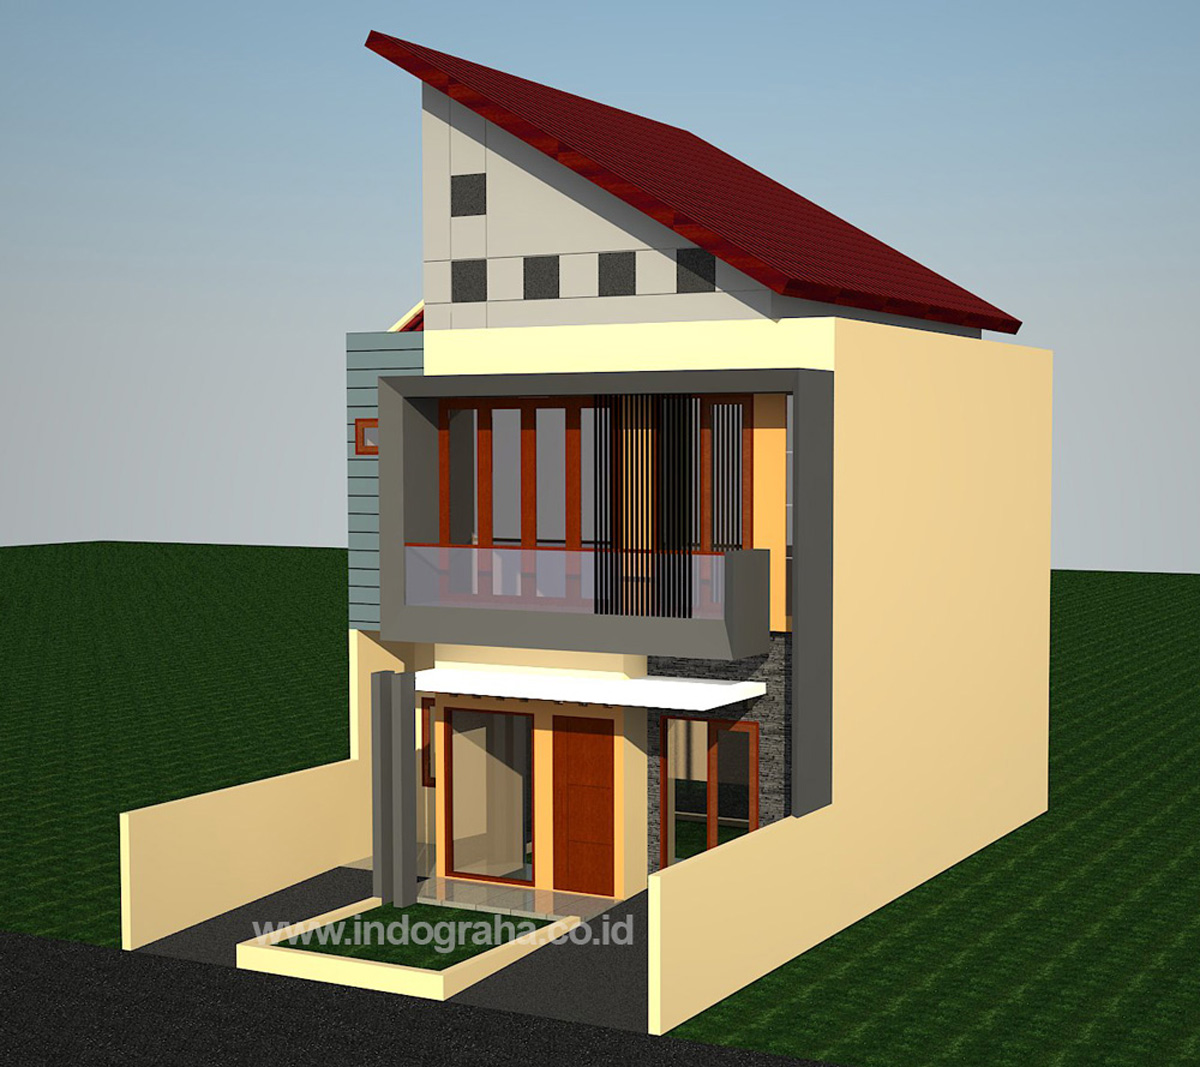  Desain  Rumah  2 Lantai Di  Belakang  gambar desain  rumah  